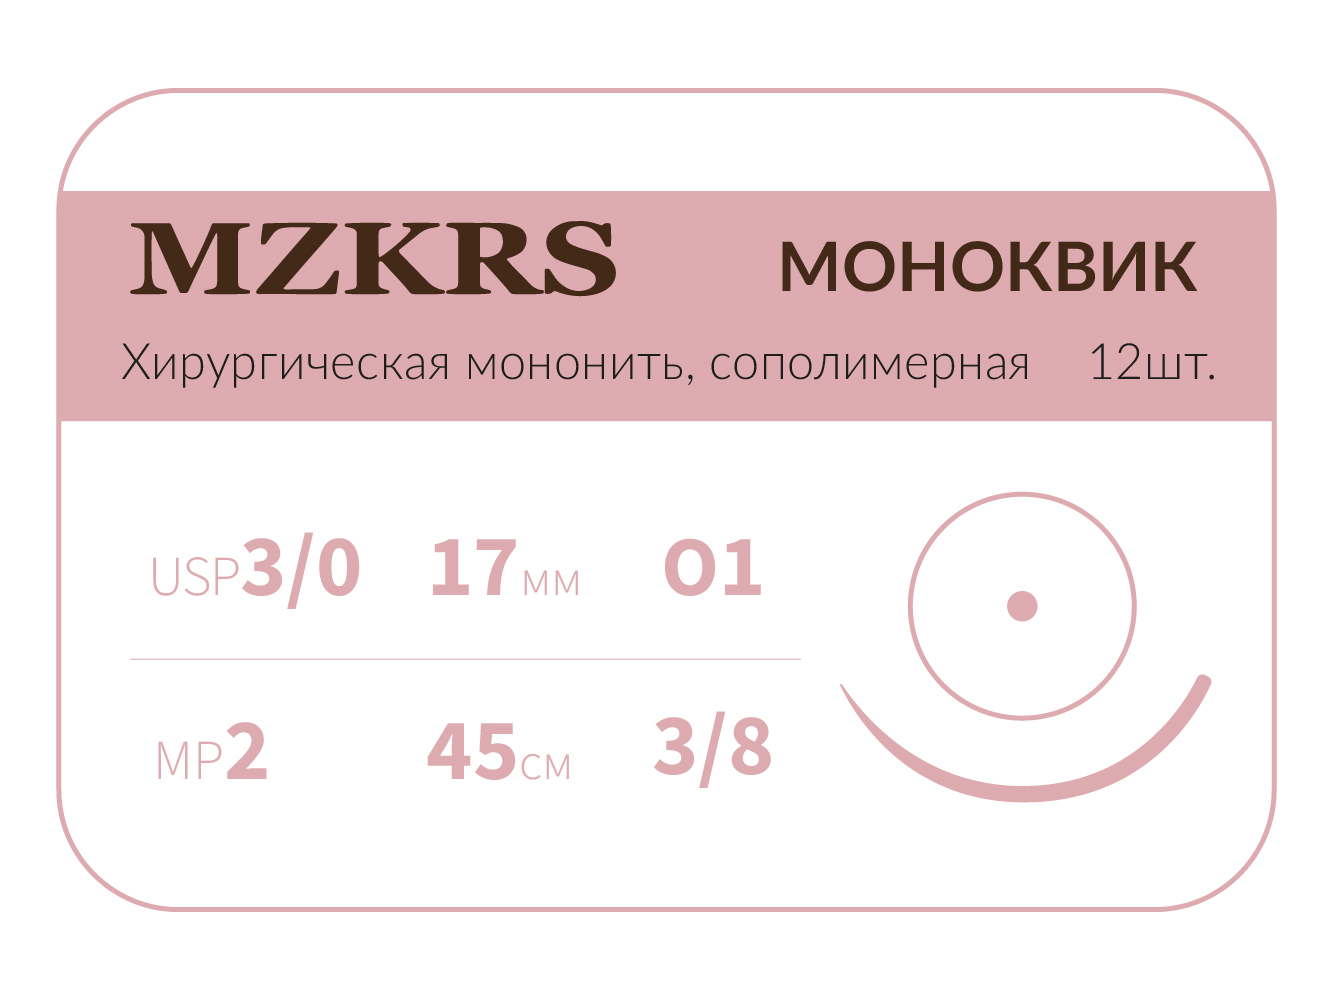 1738О1 Premium-3/0 (2)45 МОНК МОНОКВИК хирургическая мононить, сополимерная, MZKRS (Россия)